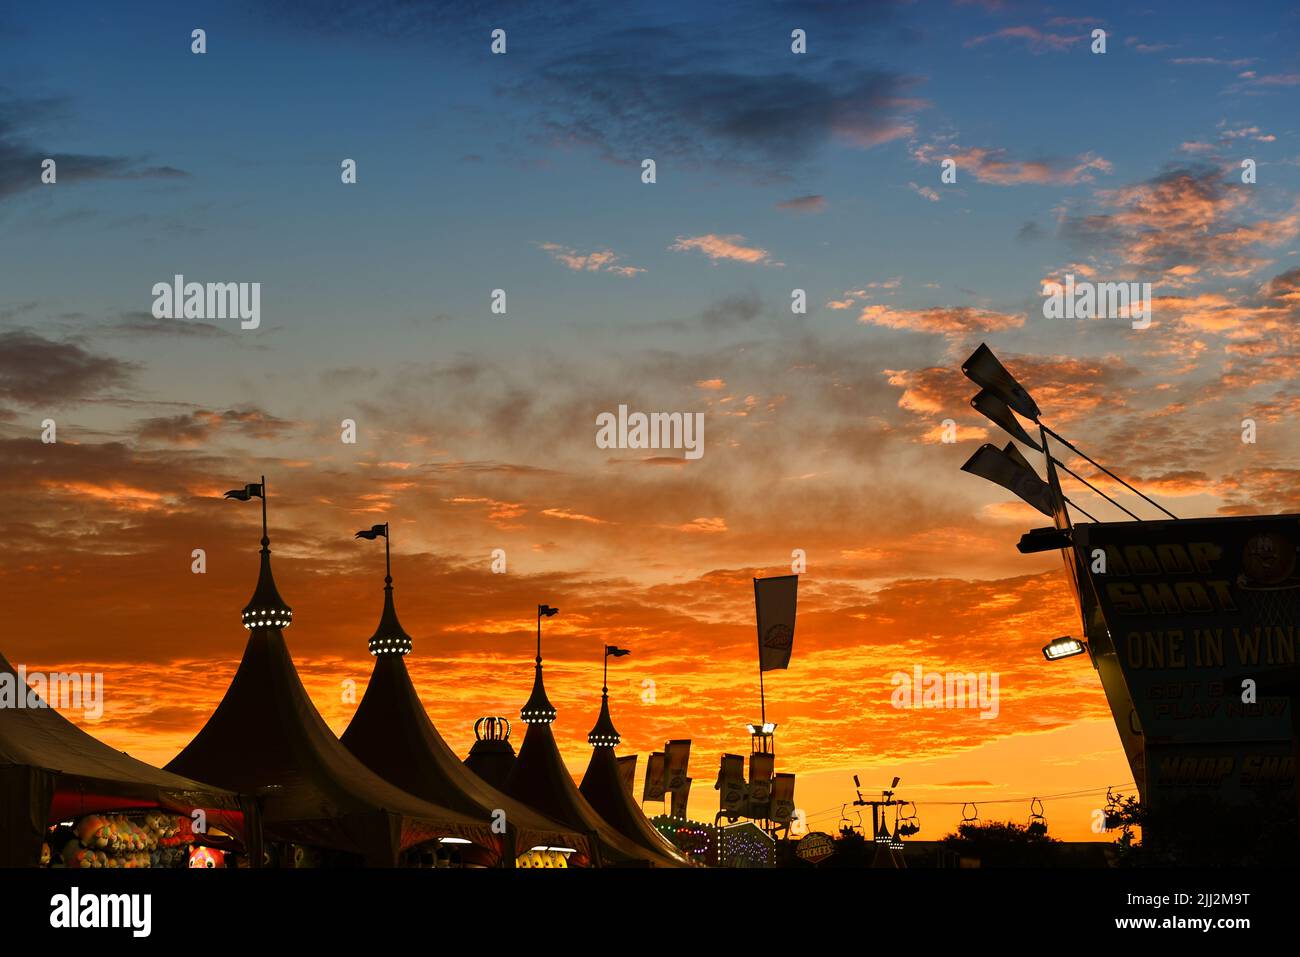 COSTA MESA, KALIFORNIEN - 20 JUL 2022: Wunderschöner Sonnenuntergang über dem Midway auf der Orange County Fair. Stockfoto